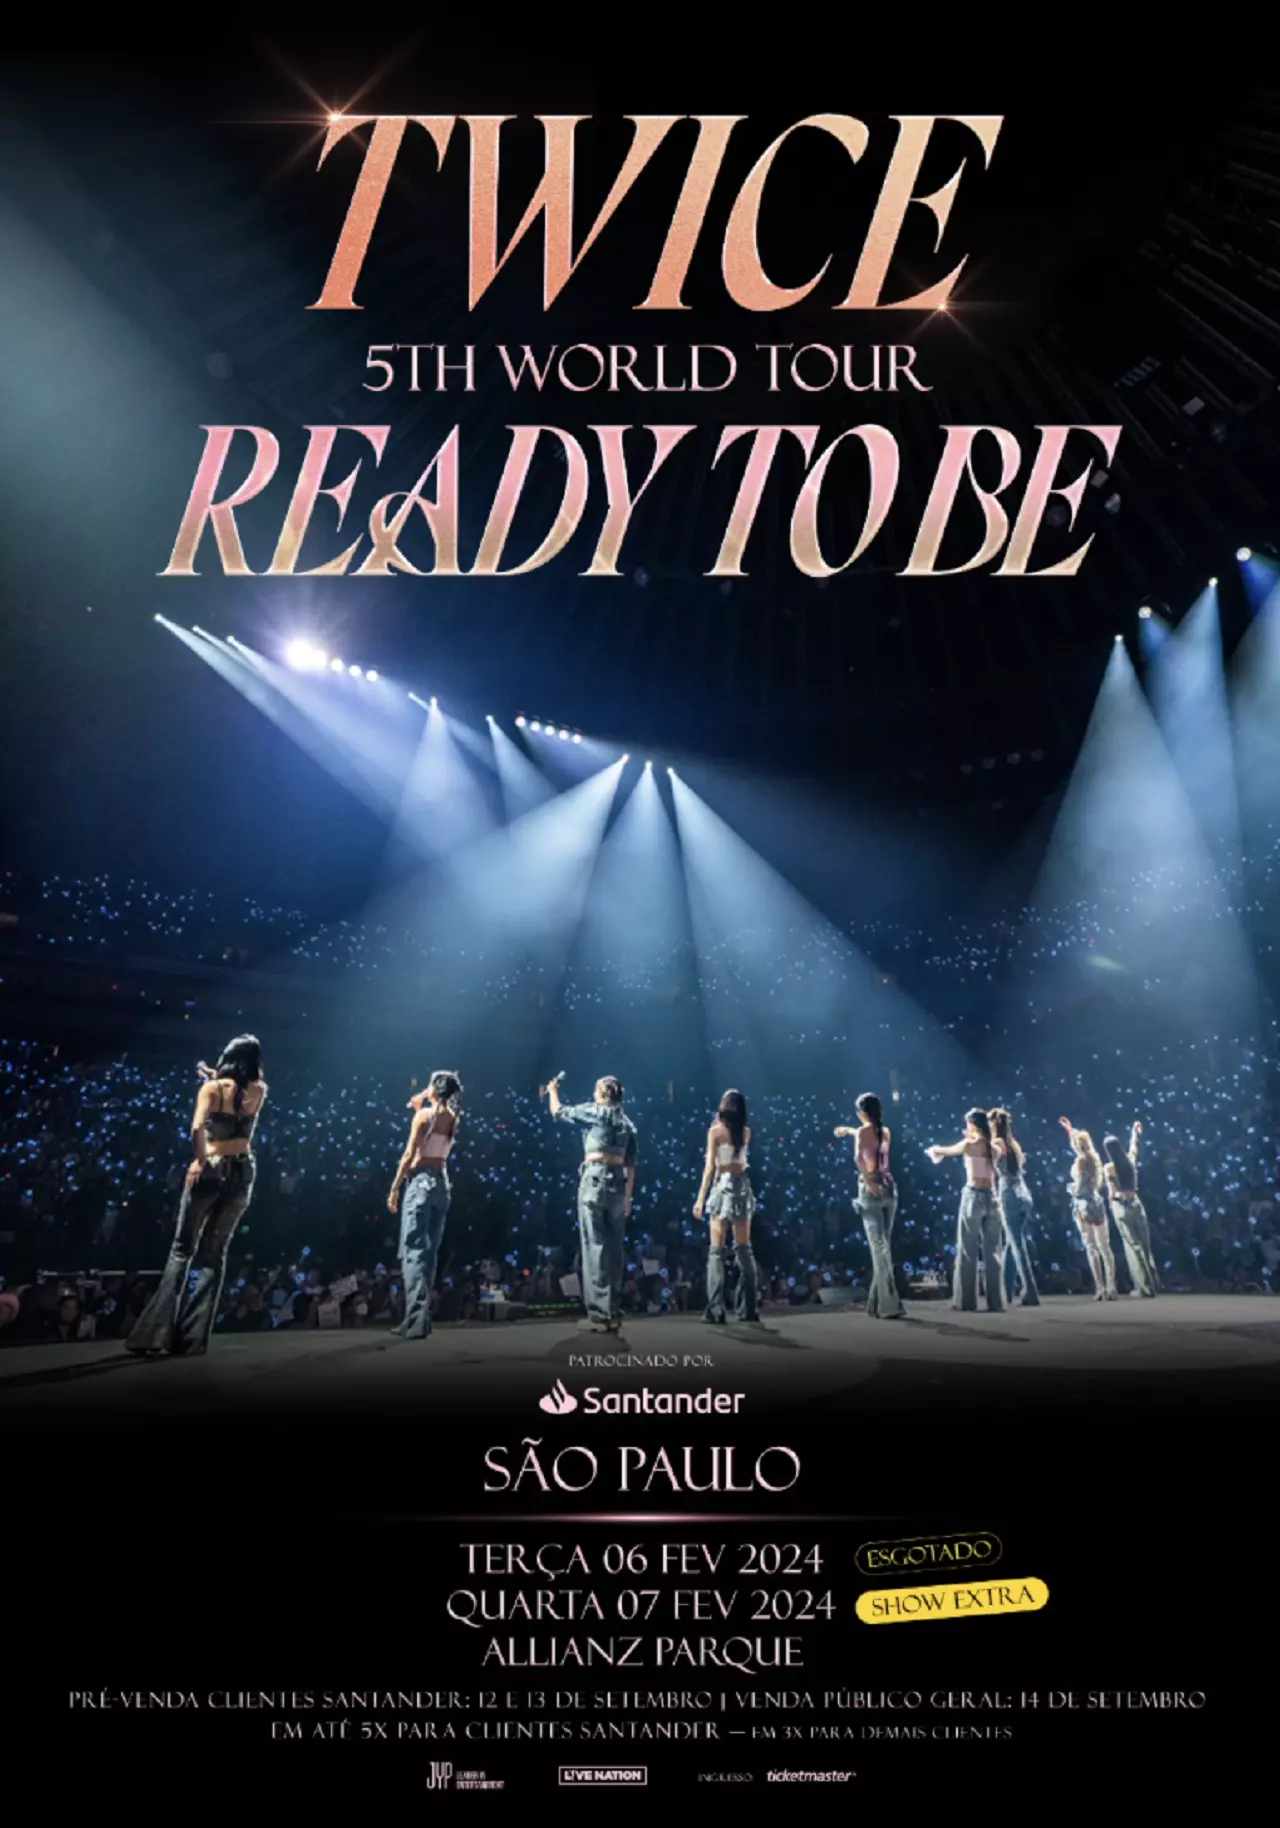 Grupo de k-pop Twice anuncia show no Brasil; saiba detalhes - Nova